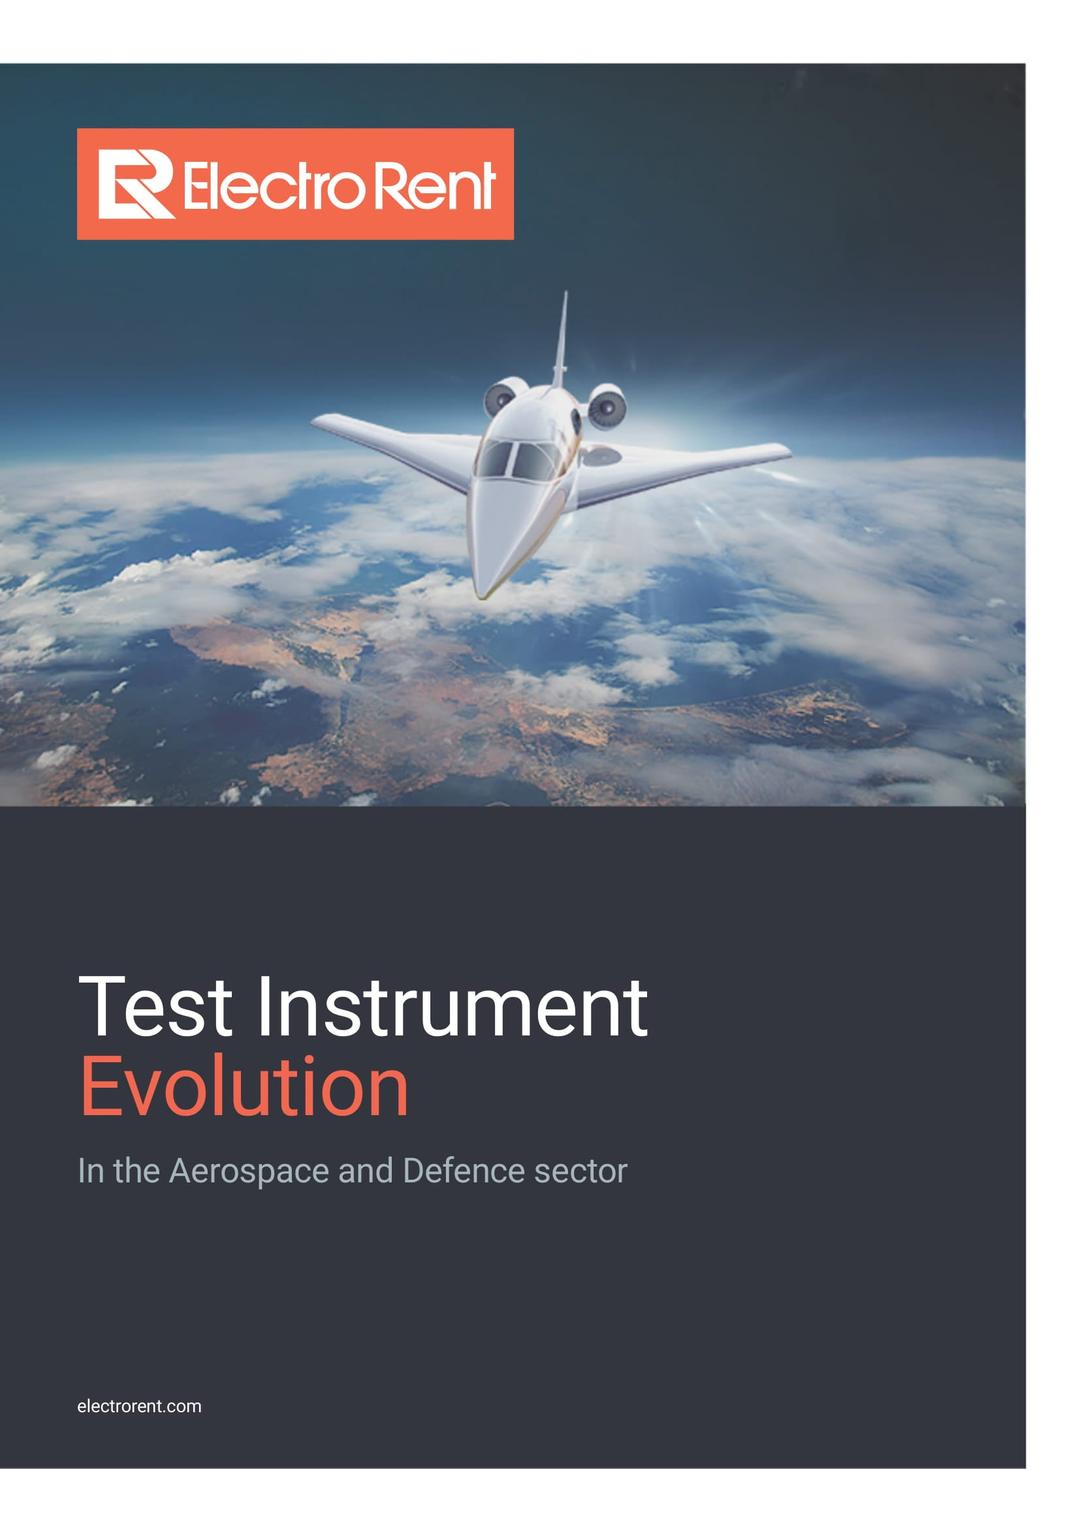 Test Instrument Evolution, image